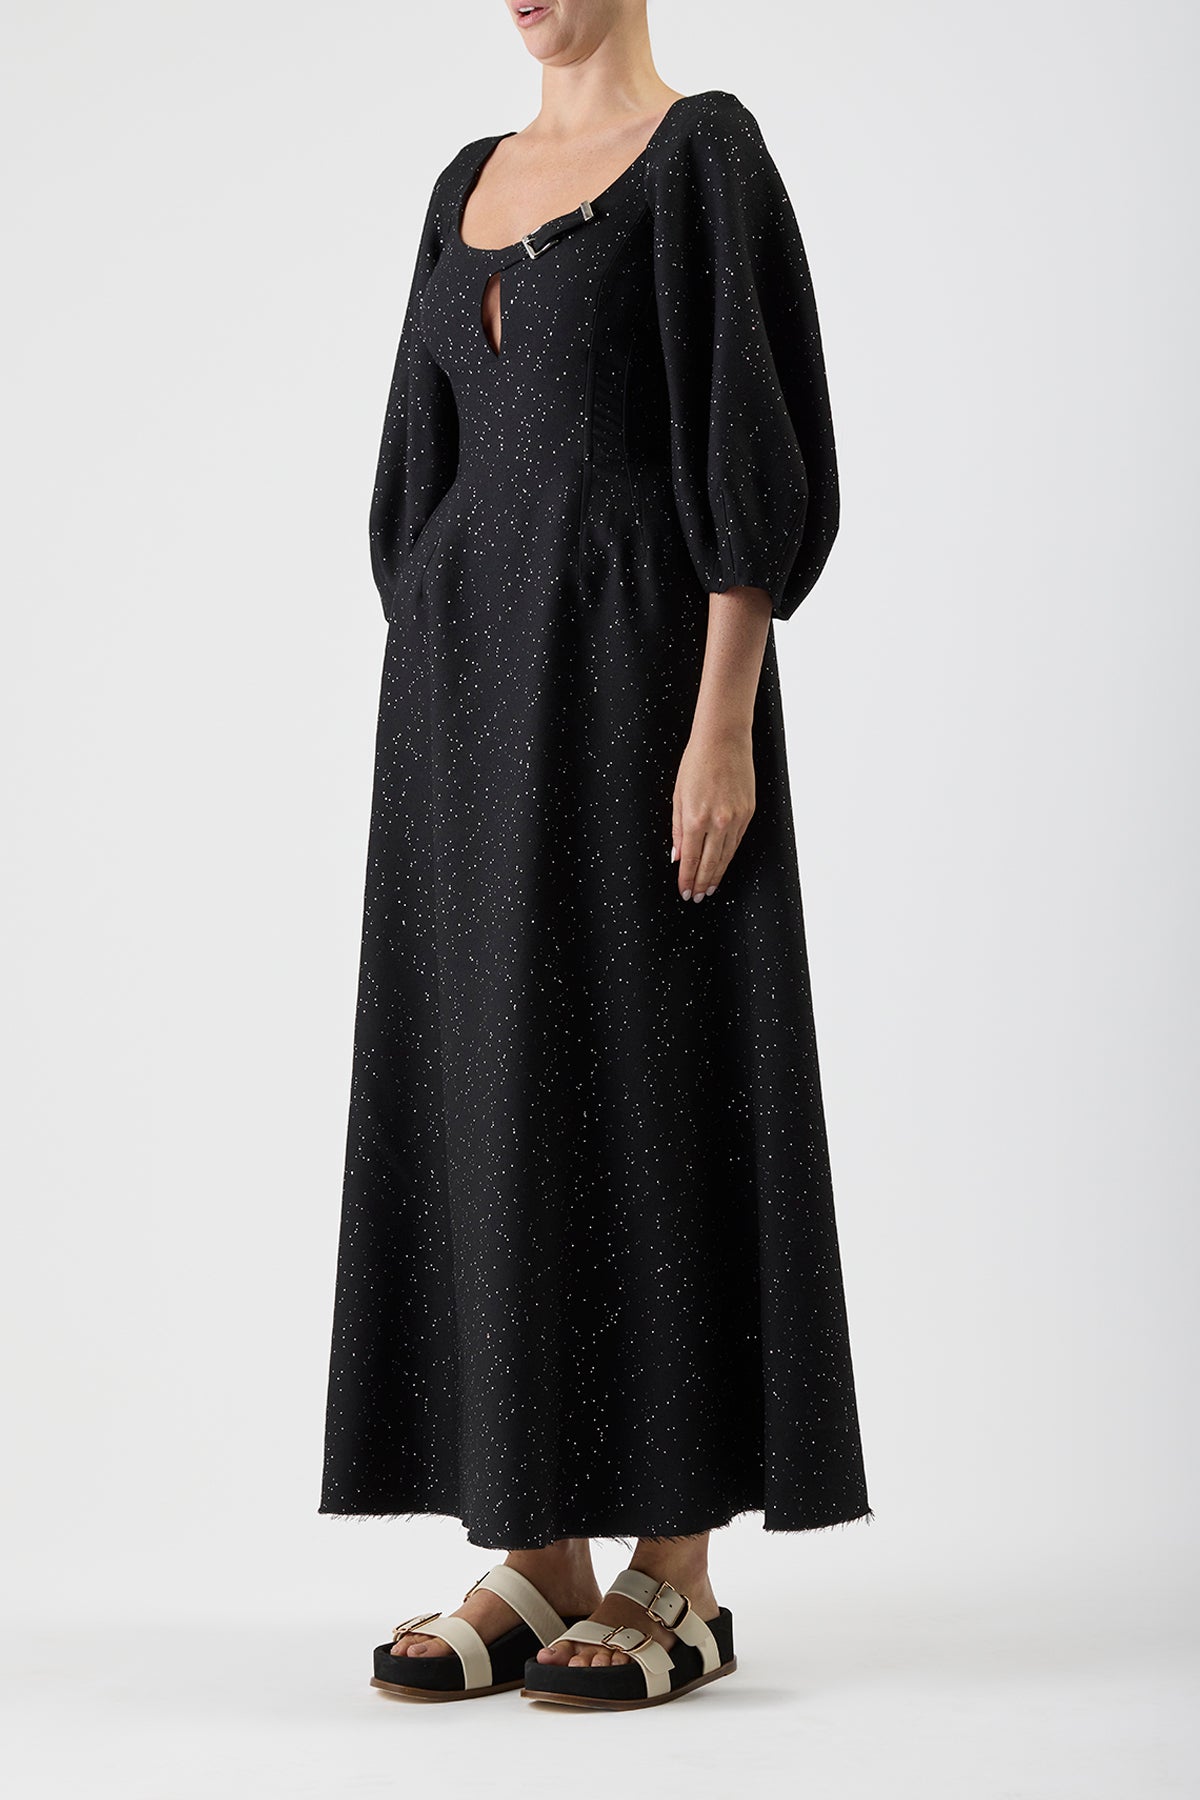 Madyn Sequin Dress in Black Wool